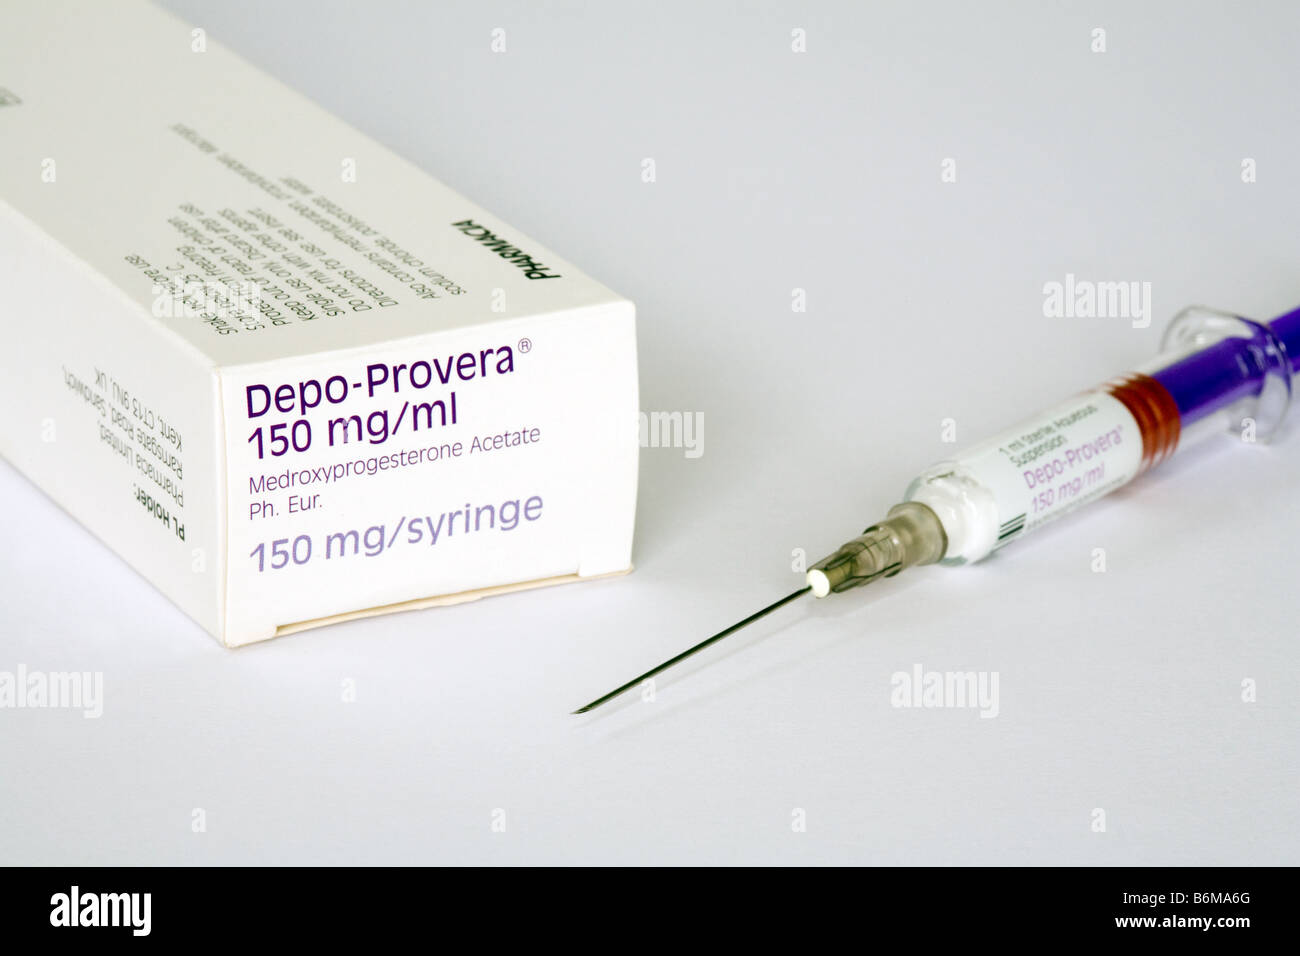 Depo-Provera injectable contraceptive Stock Photo